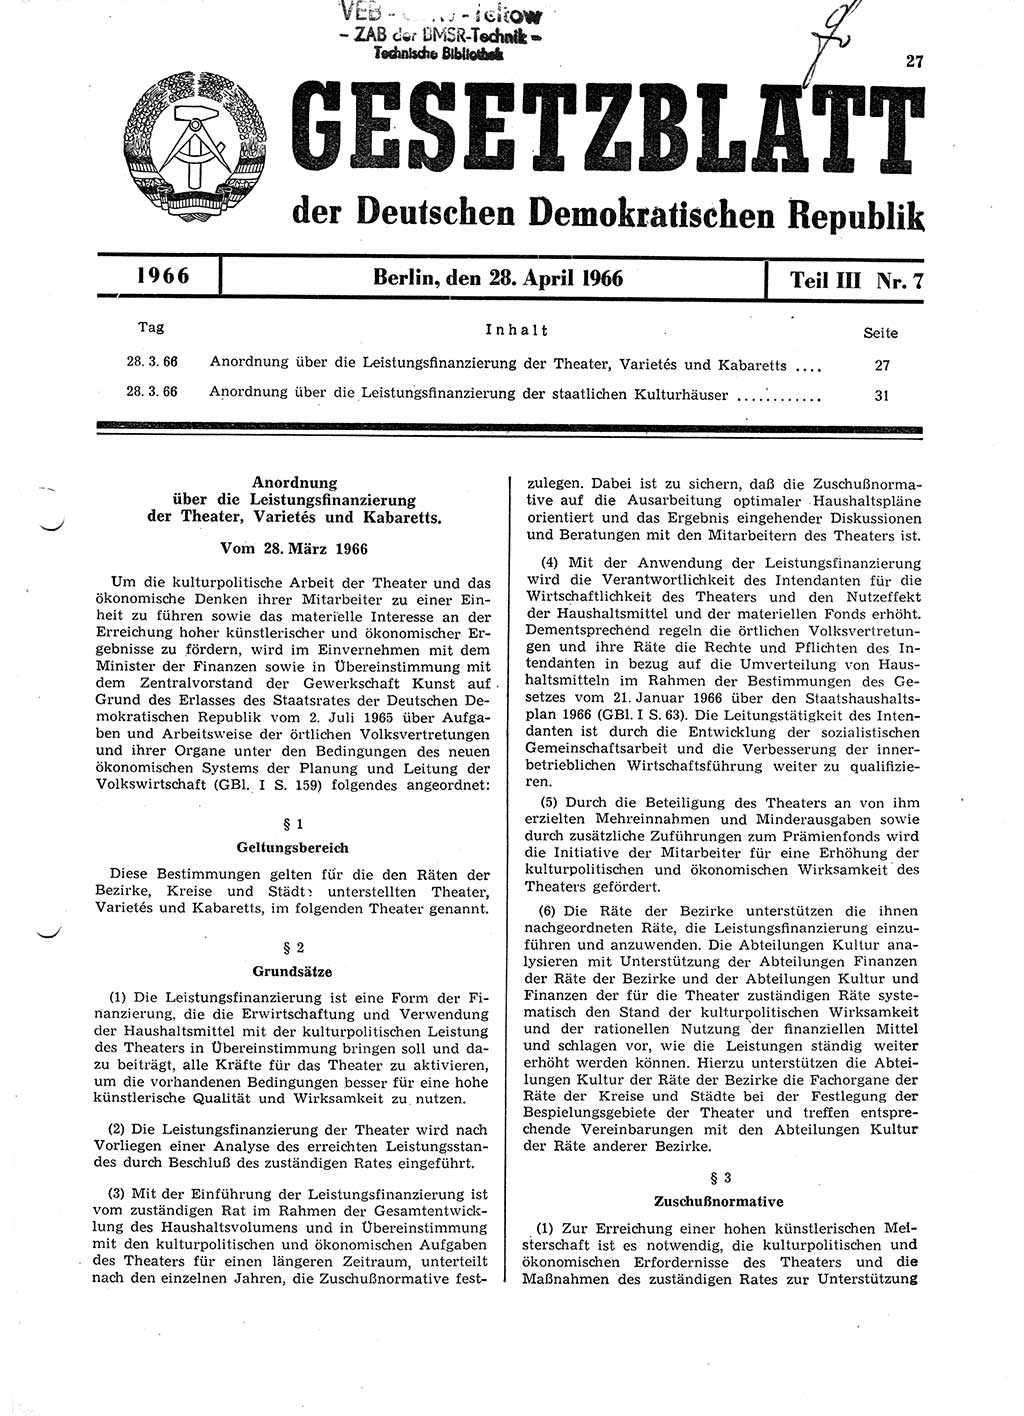 Gesetzblatt (GBl.) der Deutschen Demokratischen Republik (DDR) Teil ⅠⅠⅠ 1966, Seite 27 (GBl. DDR ⅠⅠⅠ 1966, S. 27)